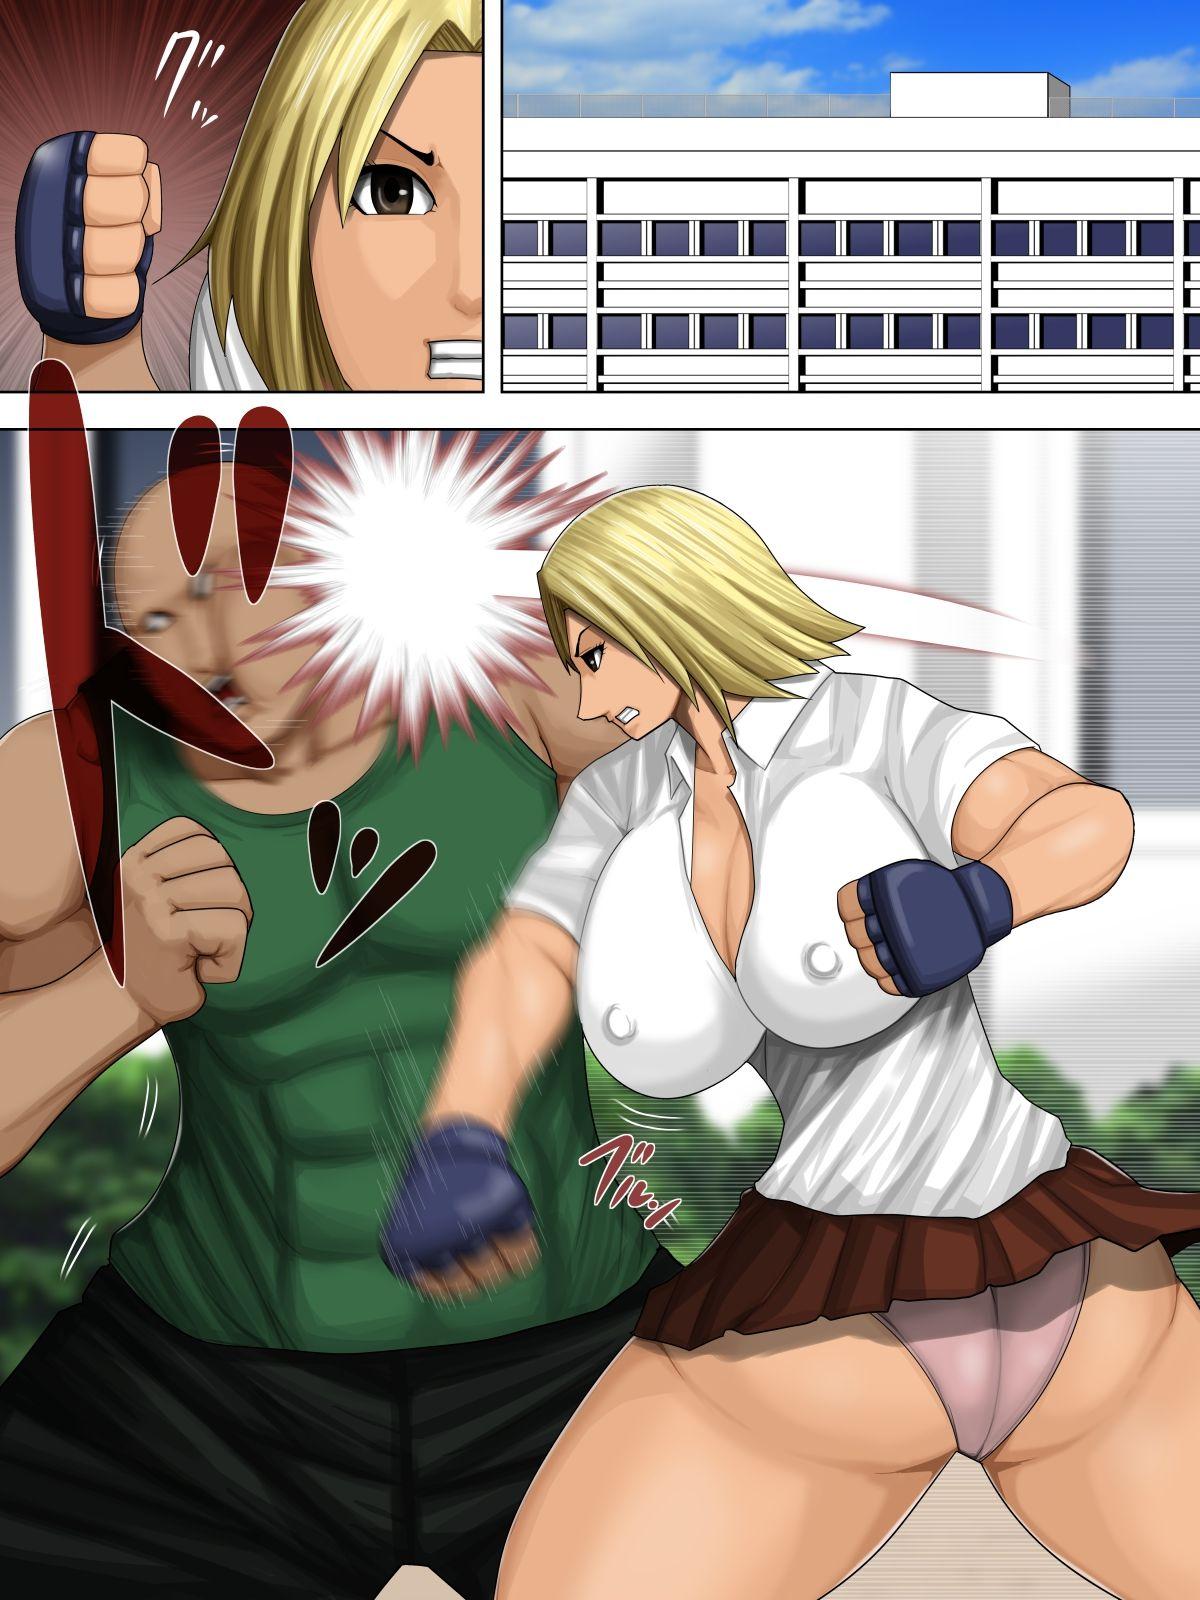 Furyou Musume vs Aiki Jujitsu 1